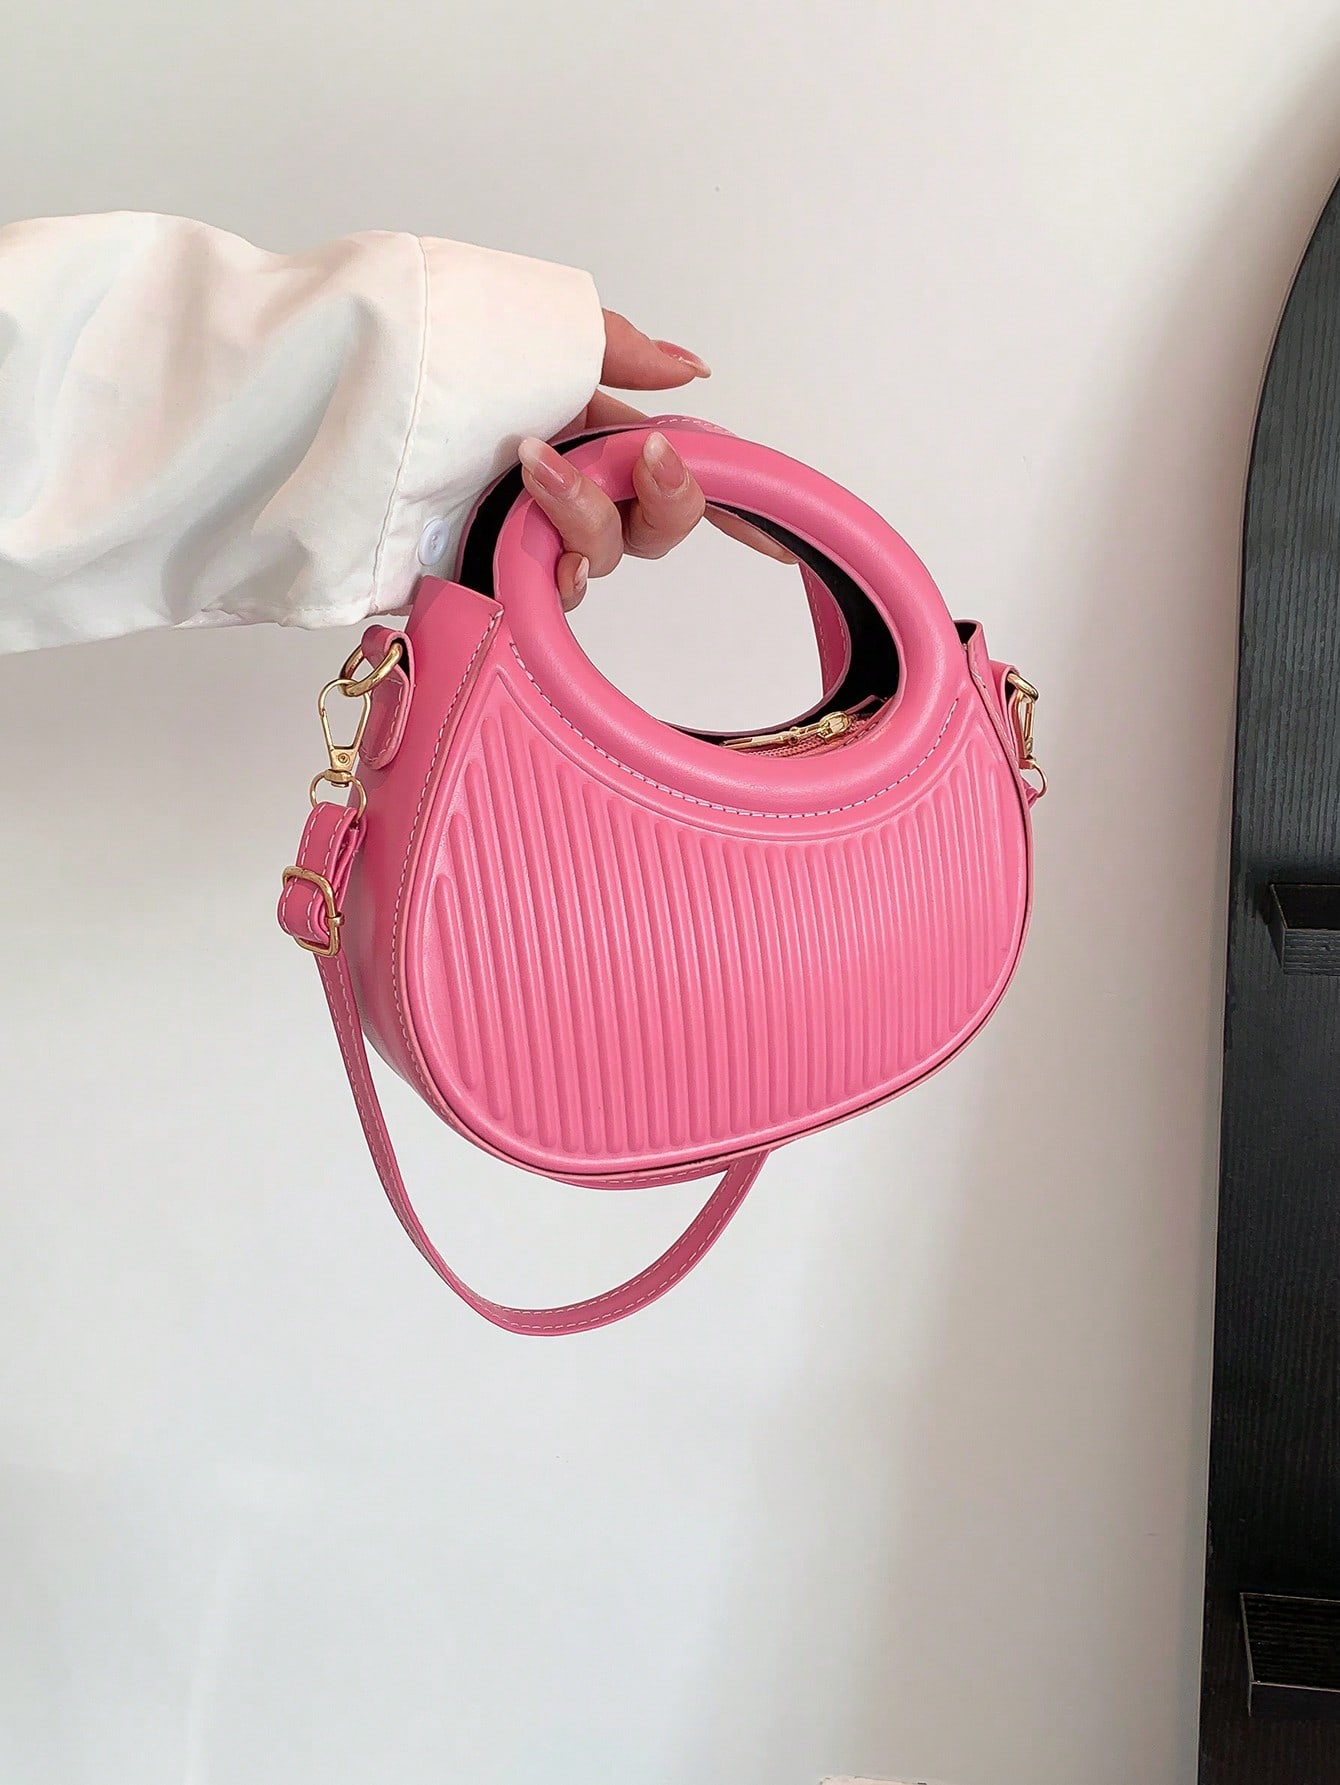 Модный черный нишевый дизайн Французская нежная леди, ярко-розовый новая сумка через плечо женская сумка нишевая губчатая сумка margiela многофункциональная наплечная сумка на плечо с полумесяцем